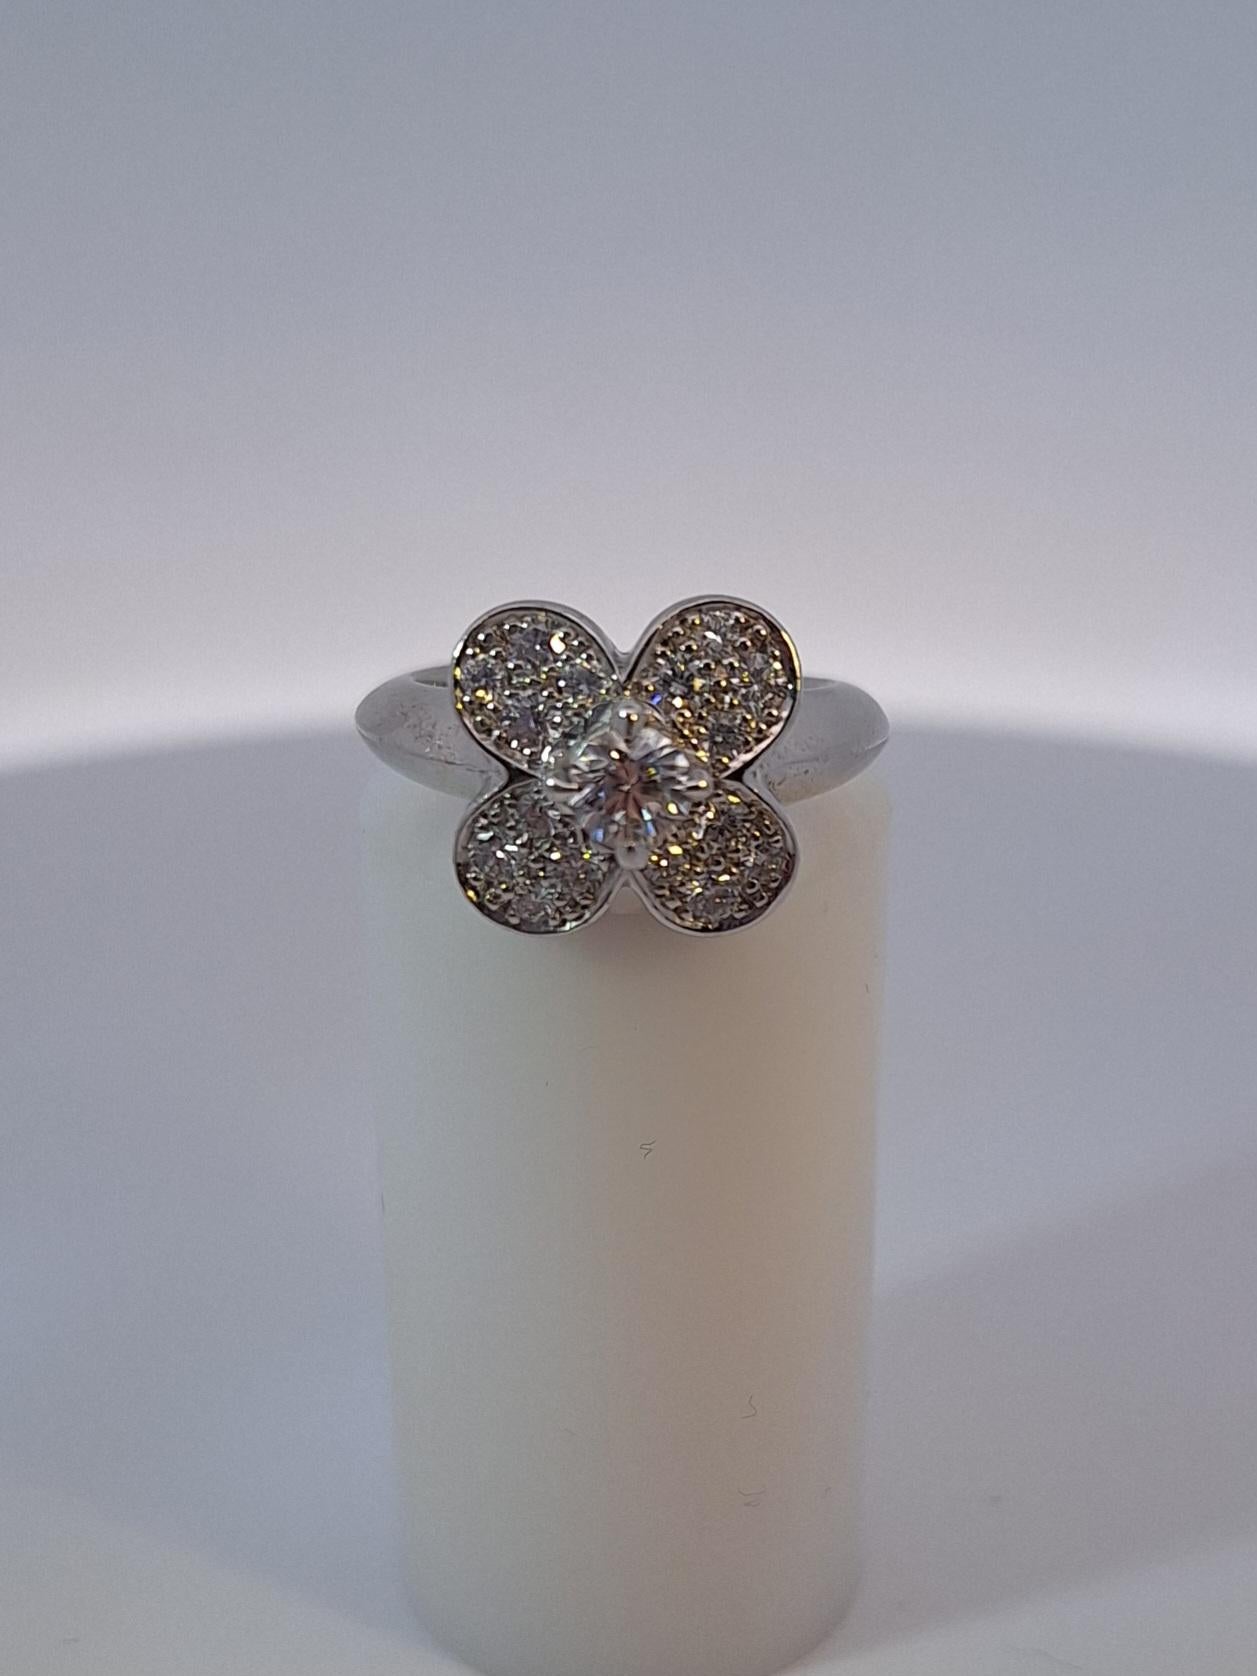 Der Ring ist als vierblättrige Blume mit einem großen runden Diamanten in der Mitte gestaltet, die Blütenblätter sind mit Diamanten pavégefasst.

Diamanten mit einem Gesamtgewicht von etwa 0,75 Karat
Unterzeichnet VCA
18 Karat Weißgold
Bruttogewicht